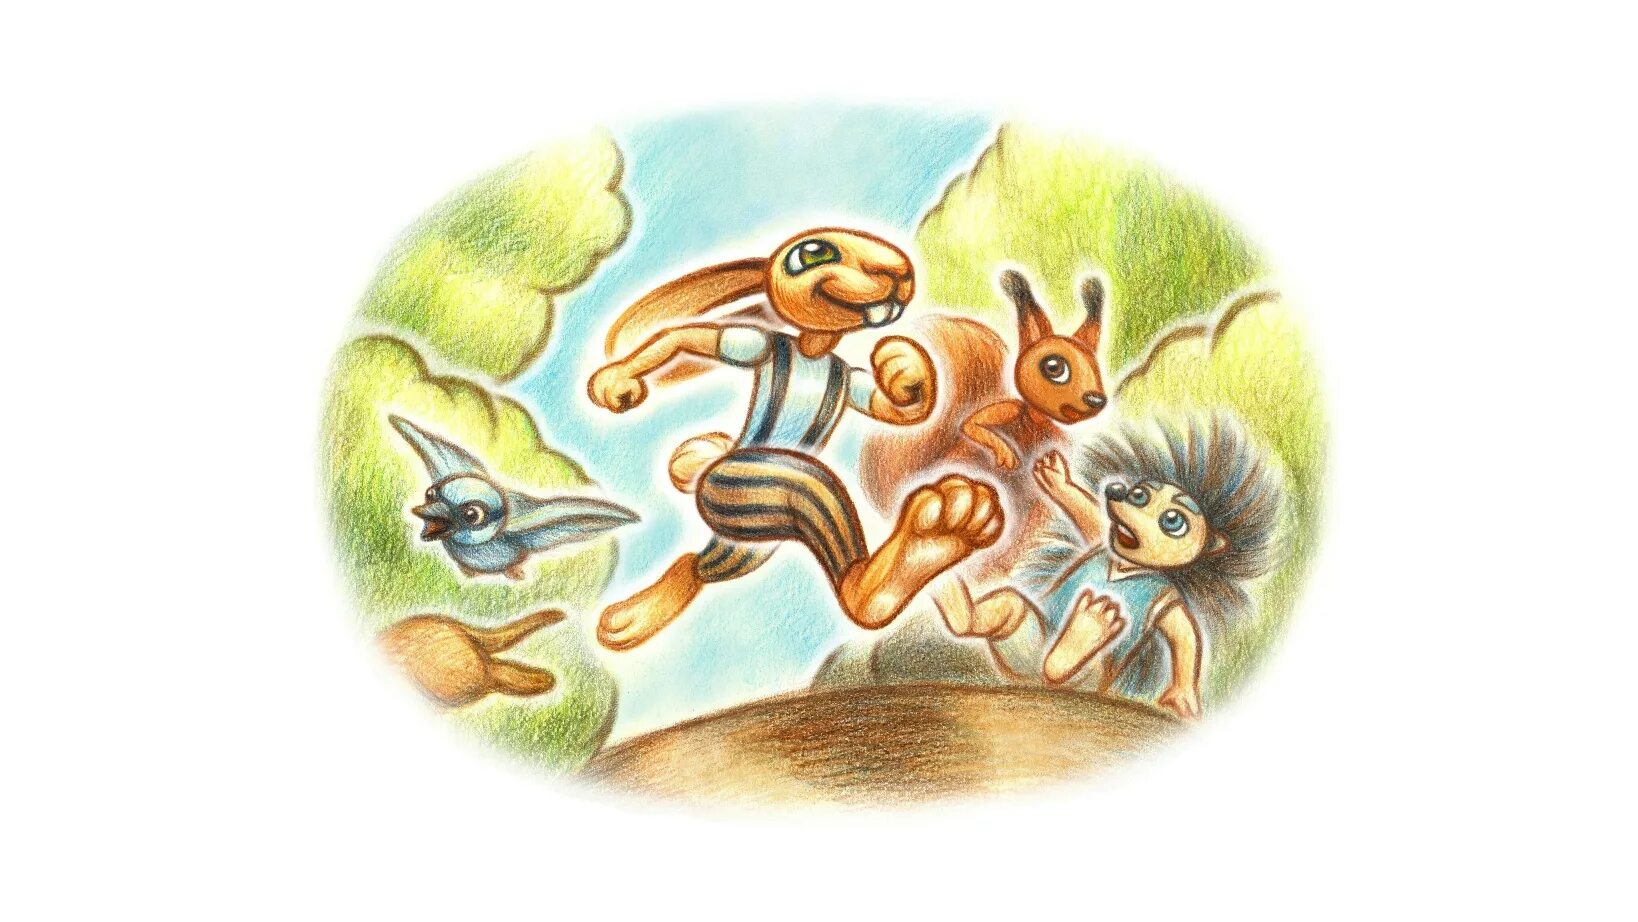 Иллюстрации заяц и черепашка. Иллюстрация к сказке заяц и черепаха. Ингушская сказка заяц и черепаха. Иллюстрация к басне заяц и черепаха. Рассказ заяц и черепаха